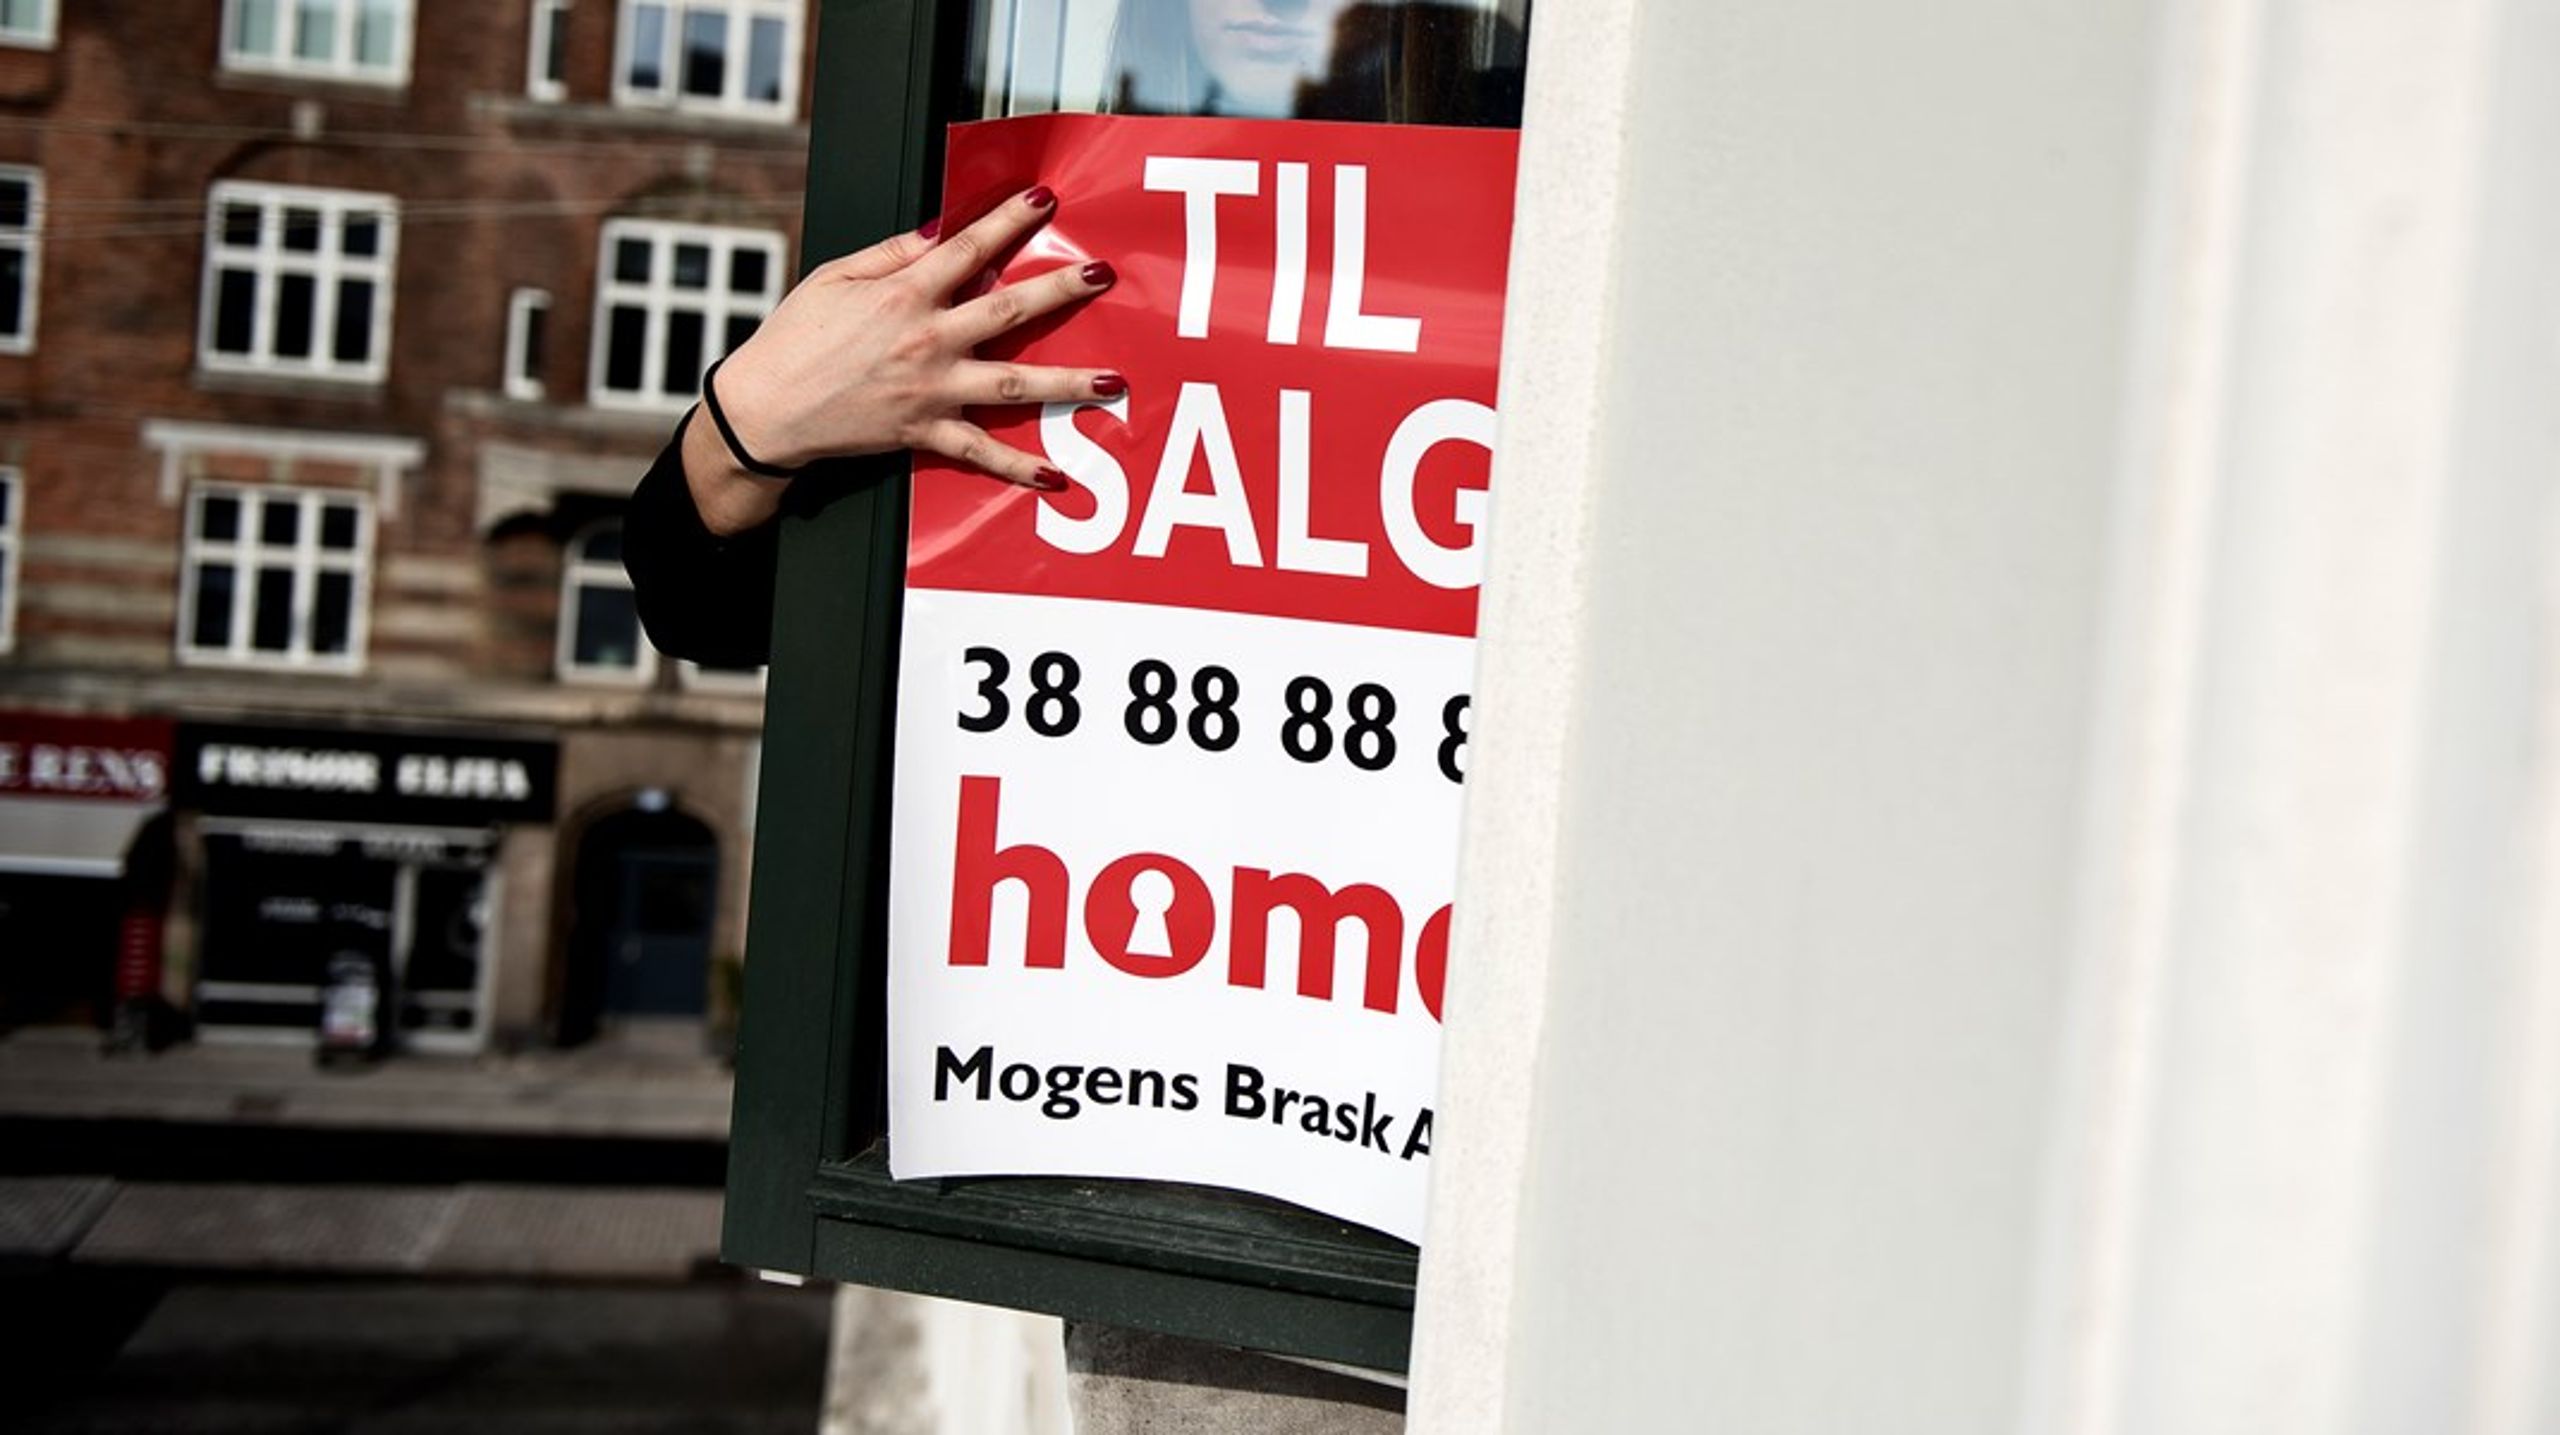 Priserne på huse og lejligheder stiger i Danmarks store byer. Det samme gør uligheden. Men den socialdemokratiske regering har ikke planer om indgreb på boligmarkedet.